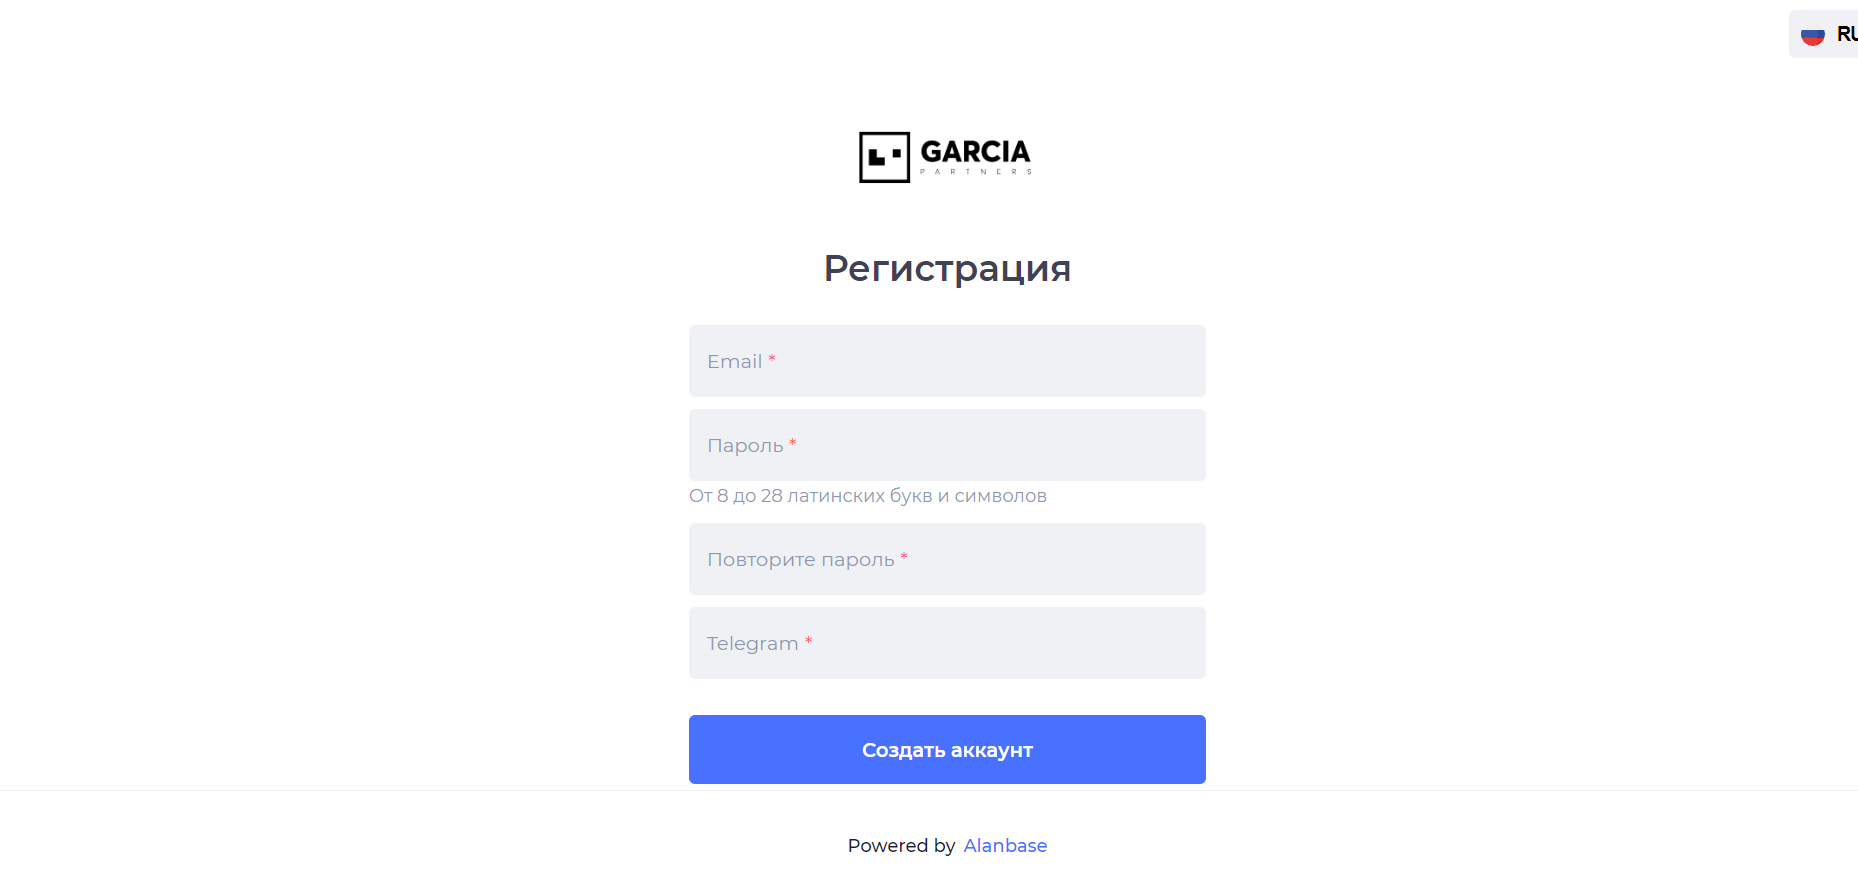 Garcia Partners — отзывы и обзор партнёрской сети